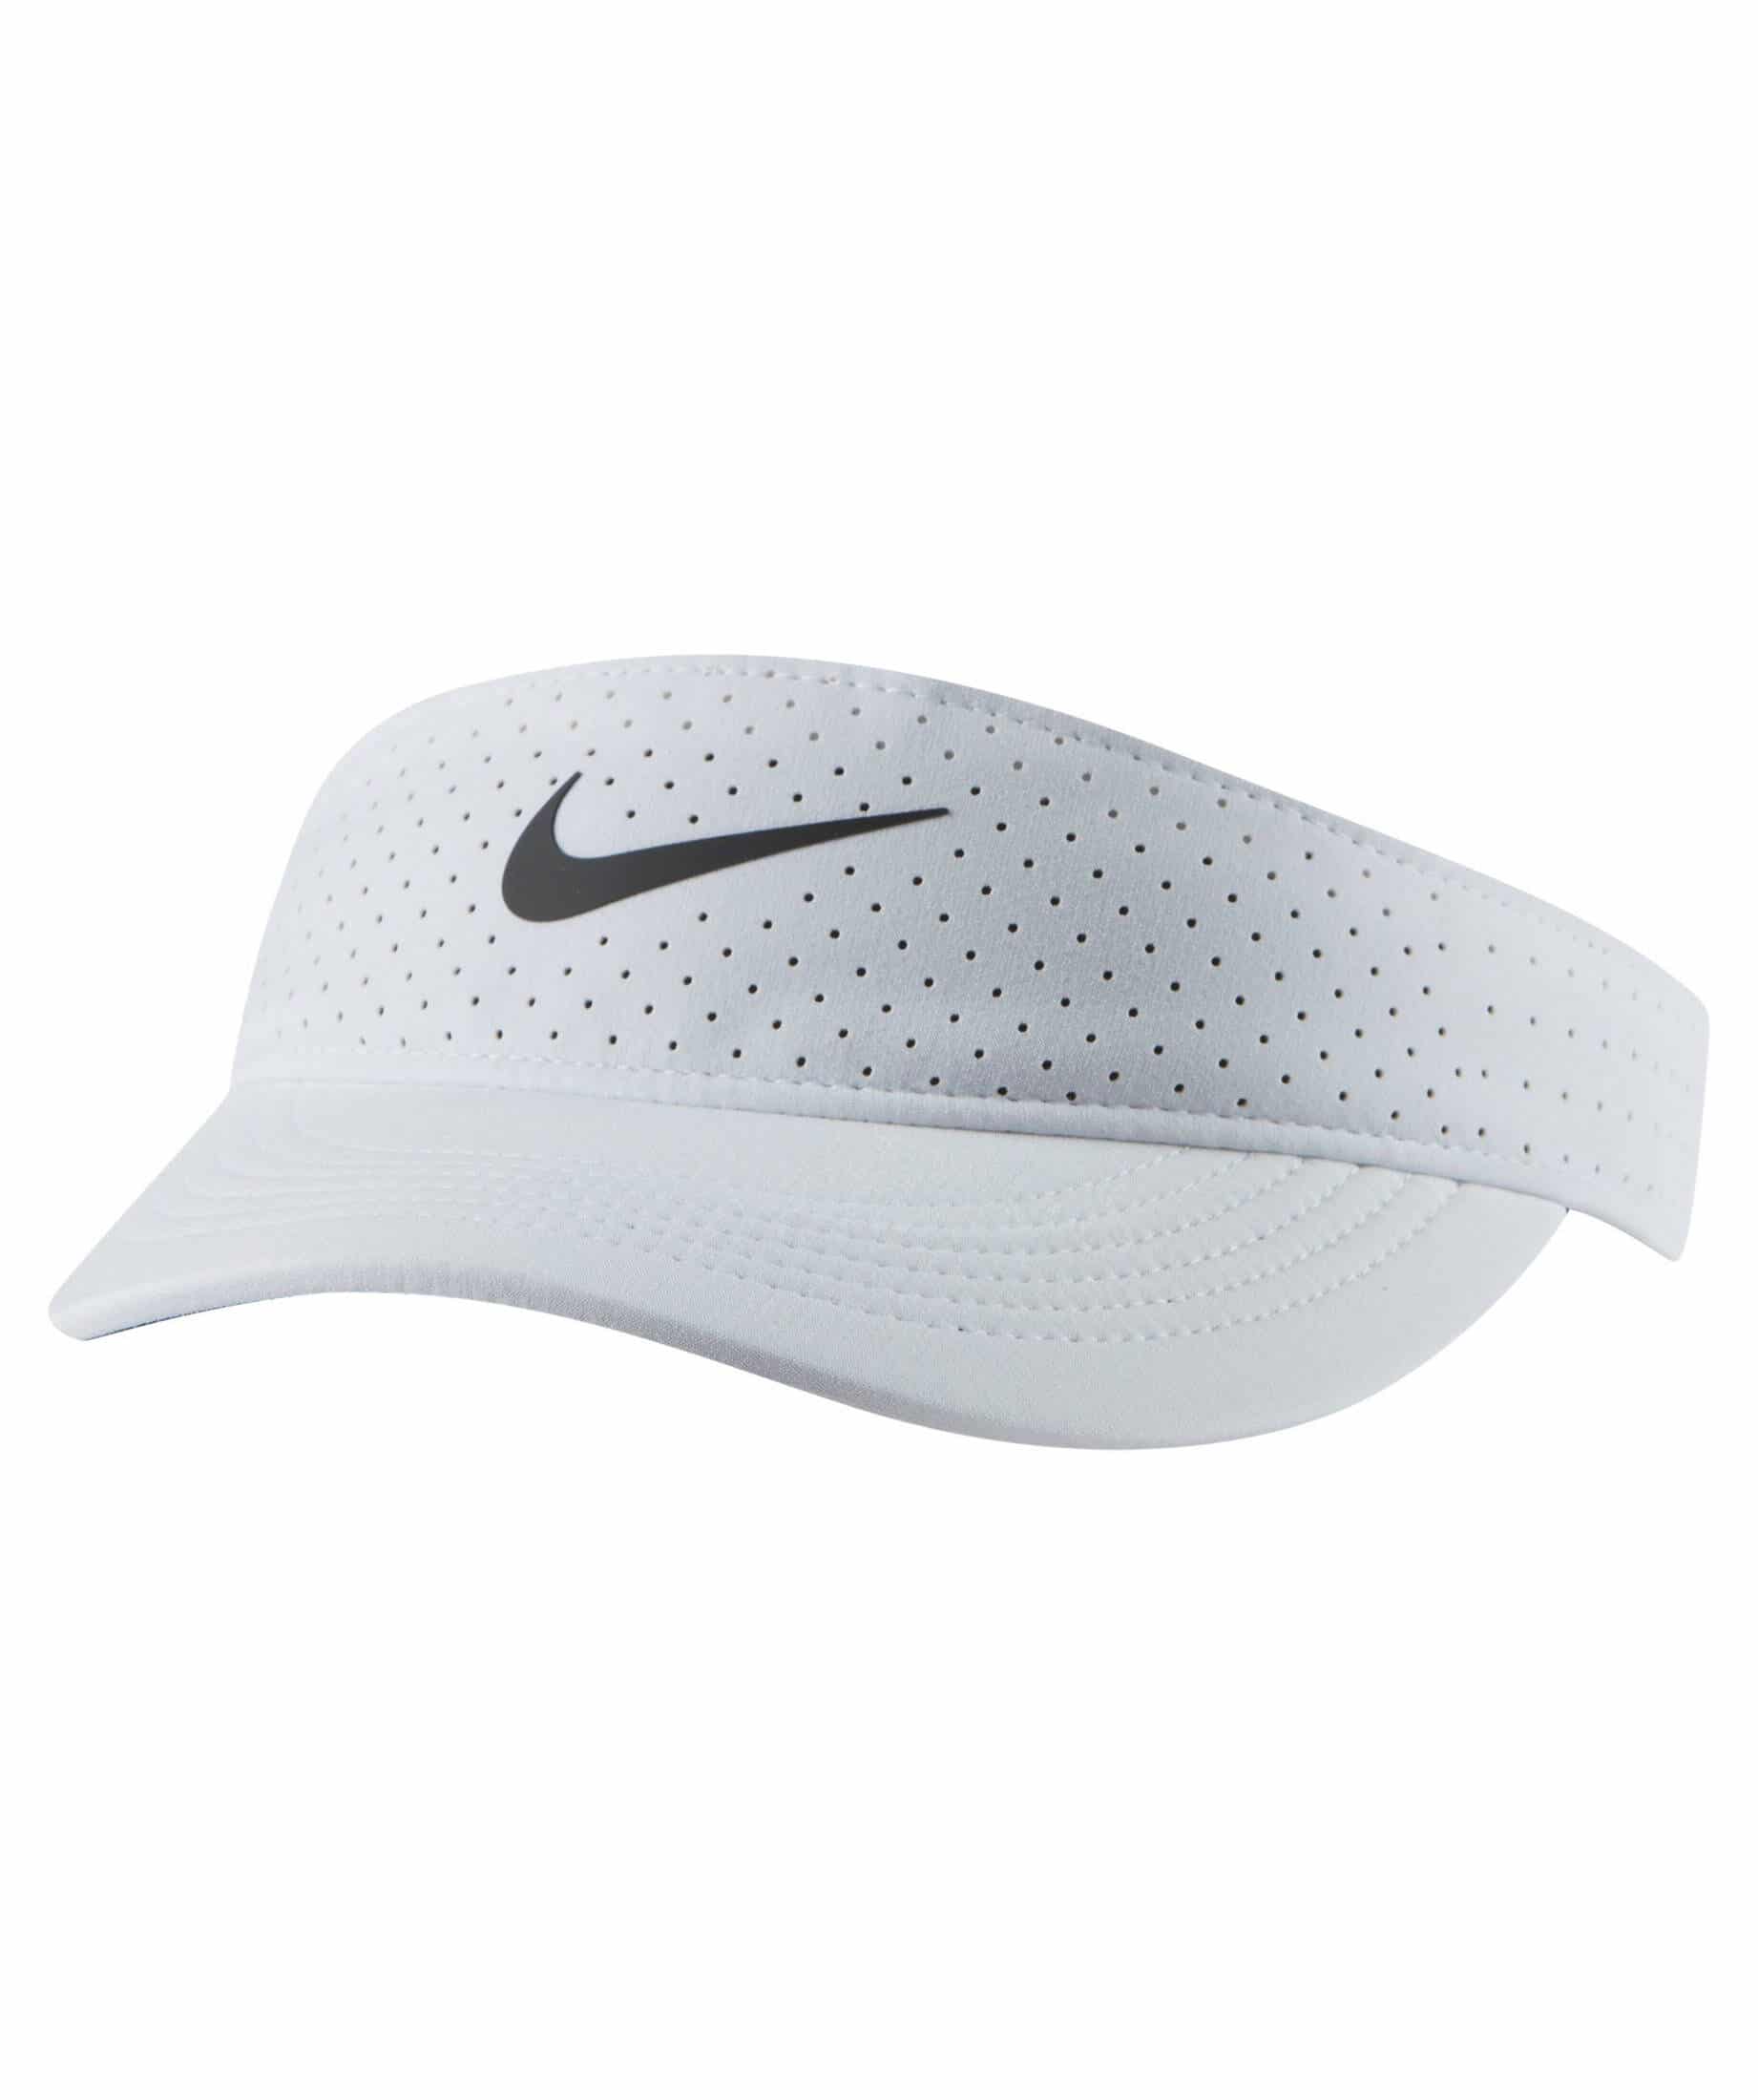 Damen Tenniscap Nike